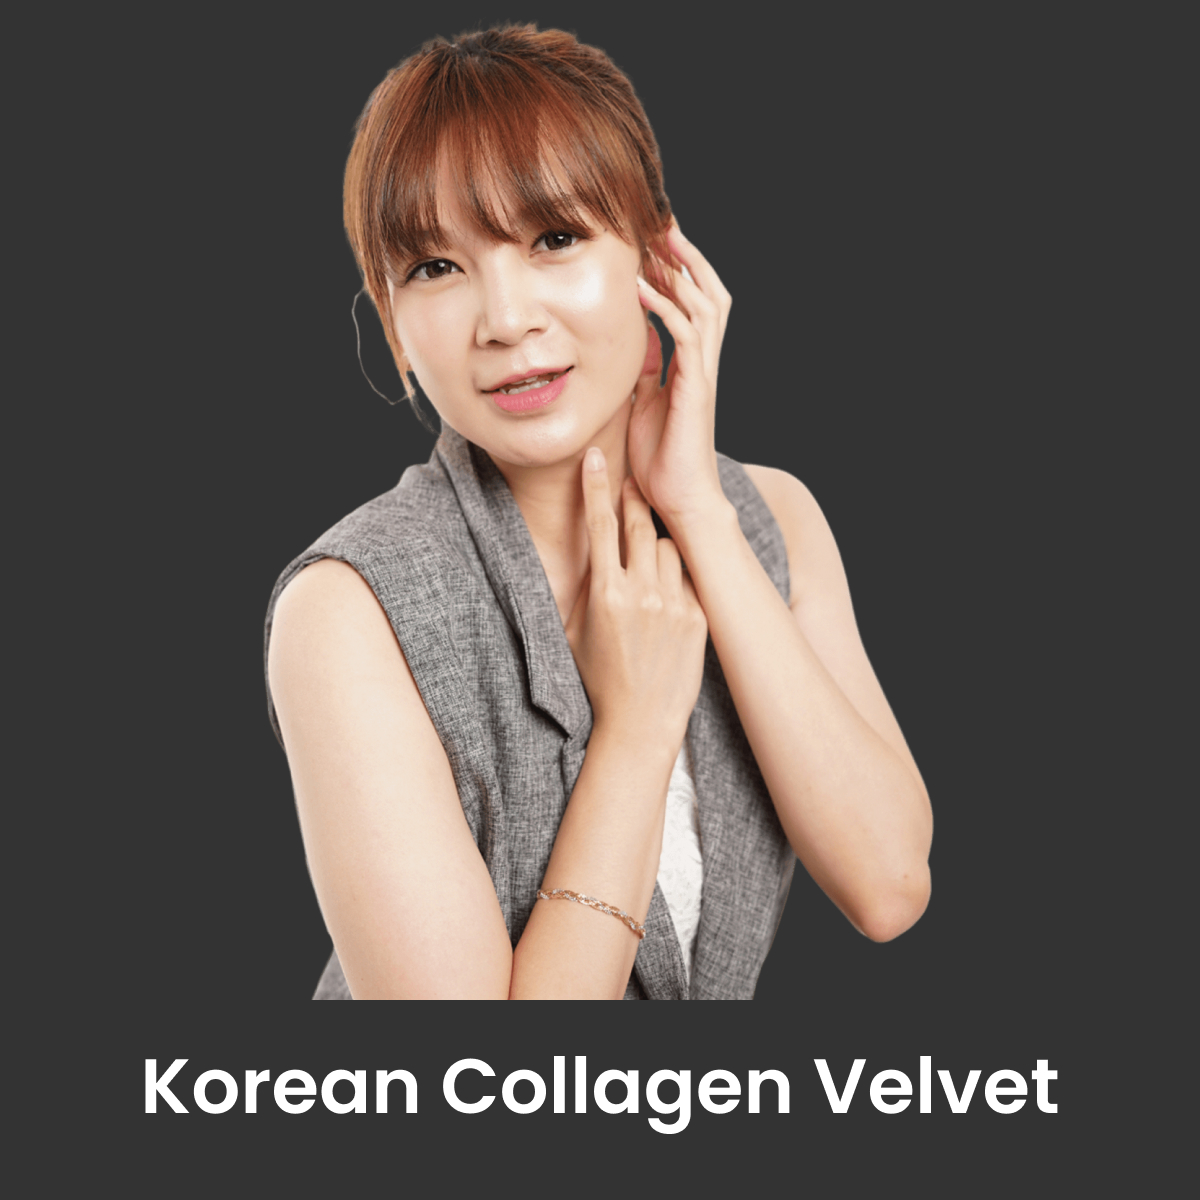 Korean Collagen Velvet